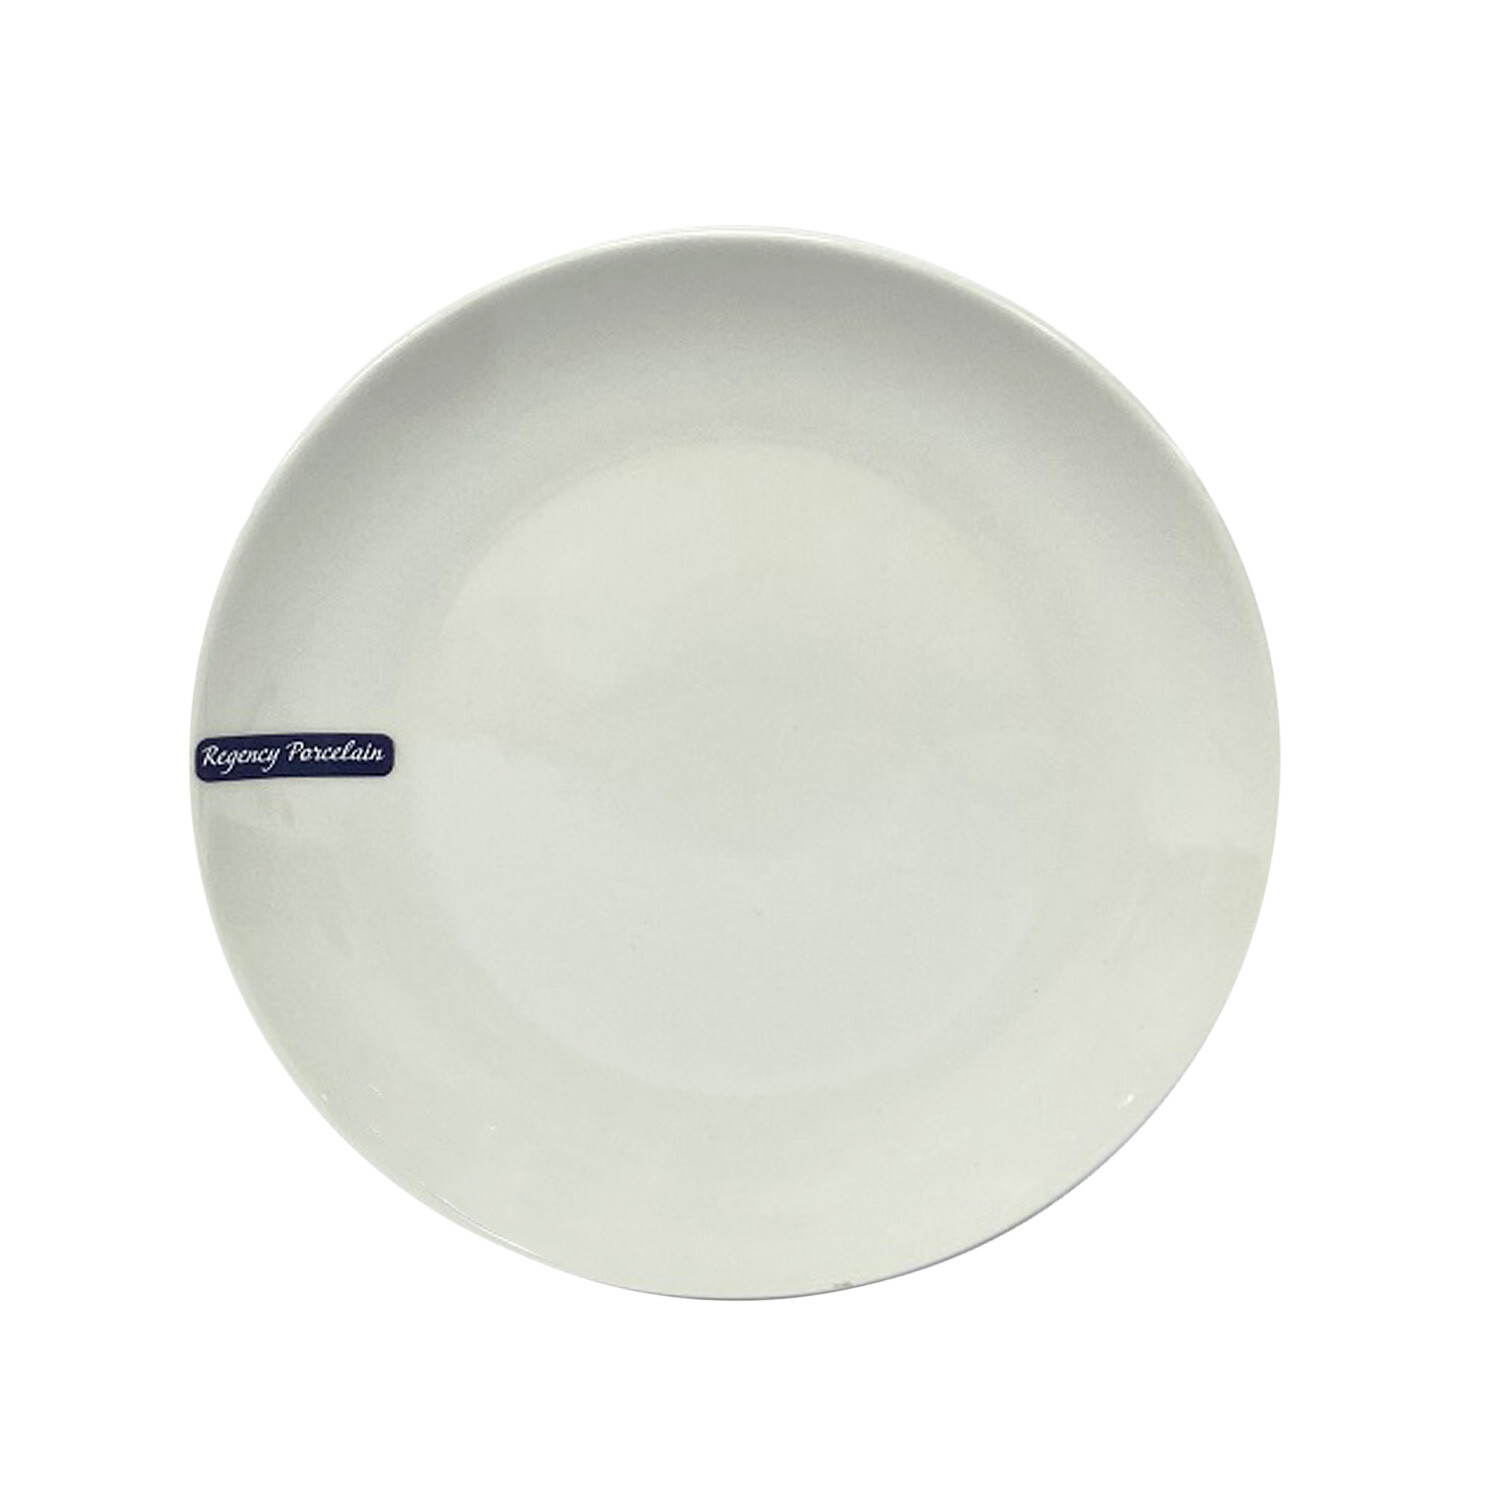 Regency Porcelain Dinner Plate - White Image